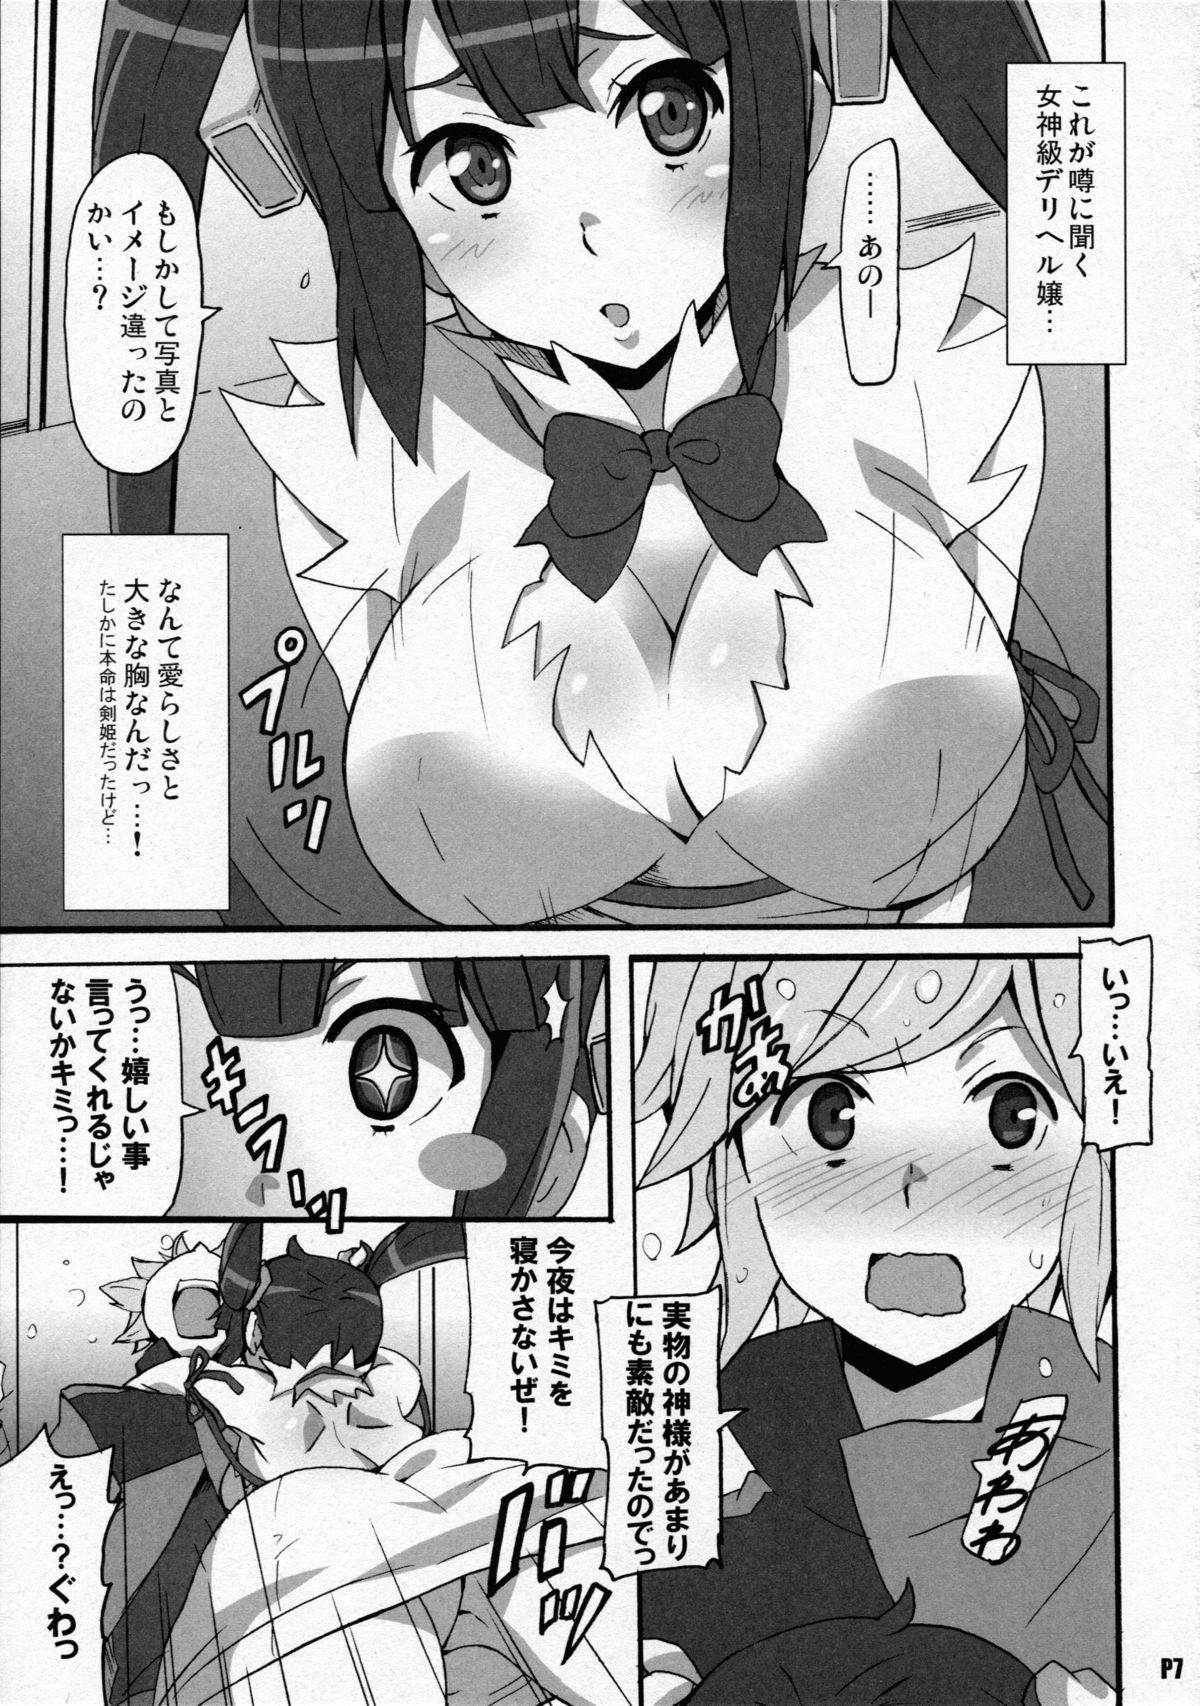 Milf Fuck Tokumei no Megami-tachi - Dungeon ni deai o motomeru no wa machigatteiru darou ka Oiled - Page 7